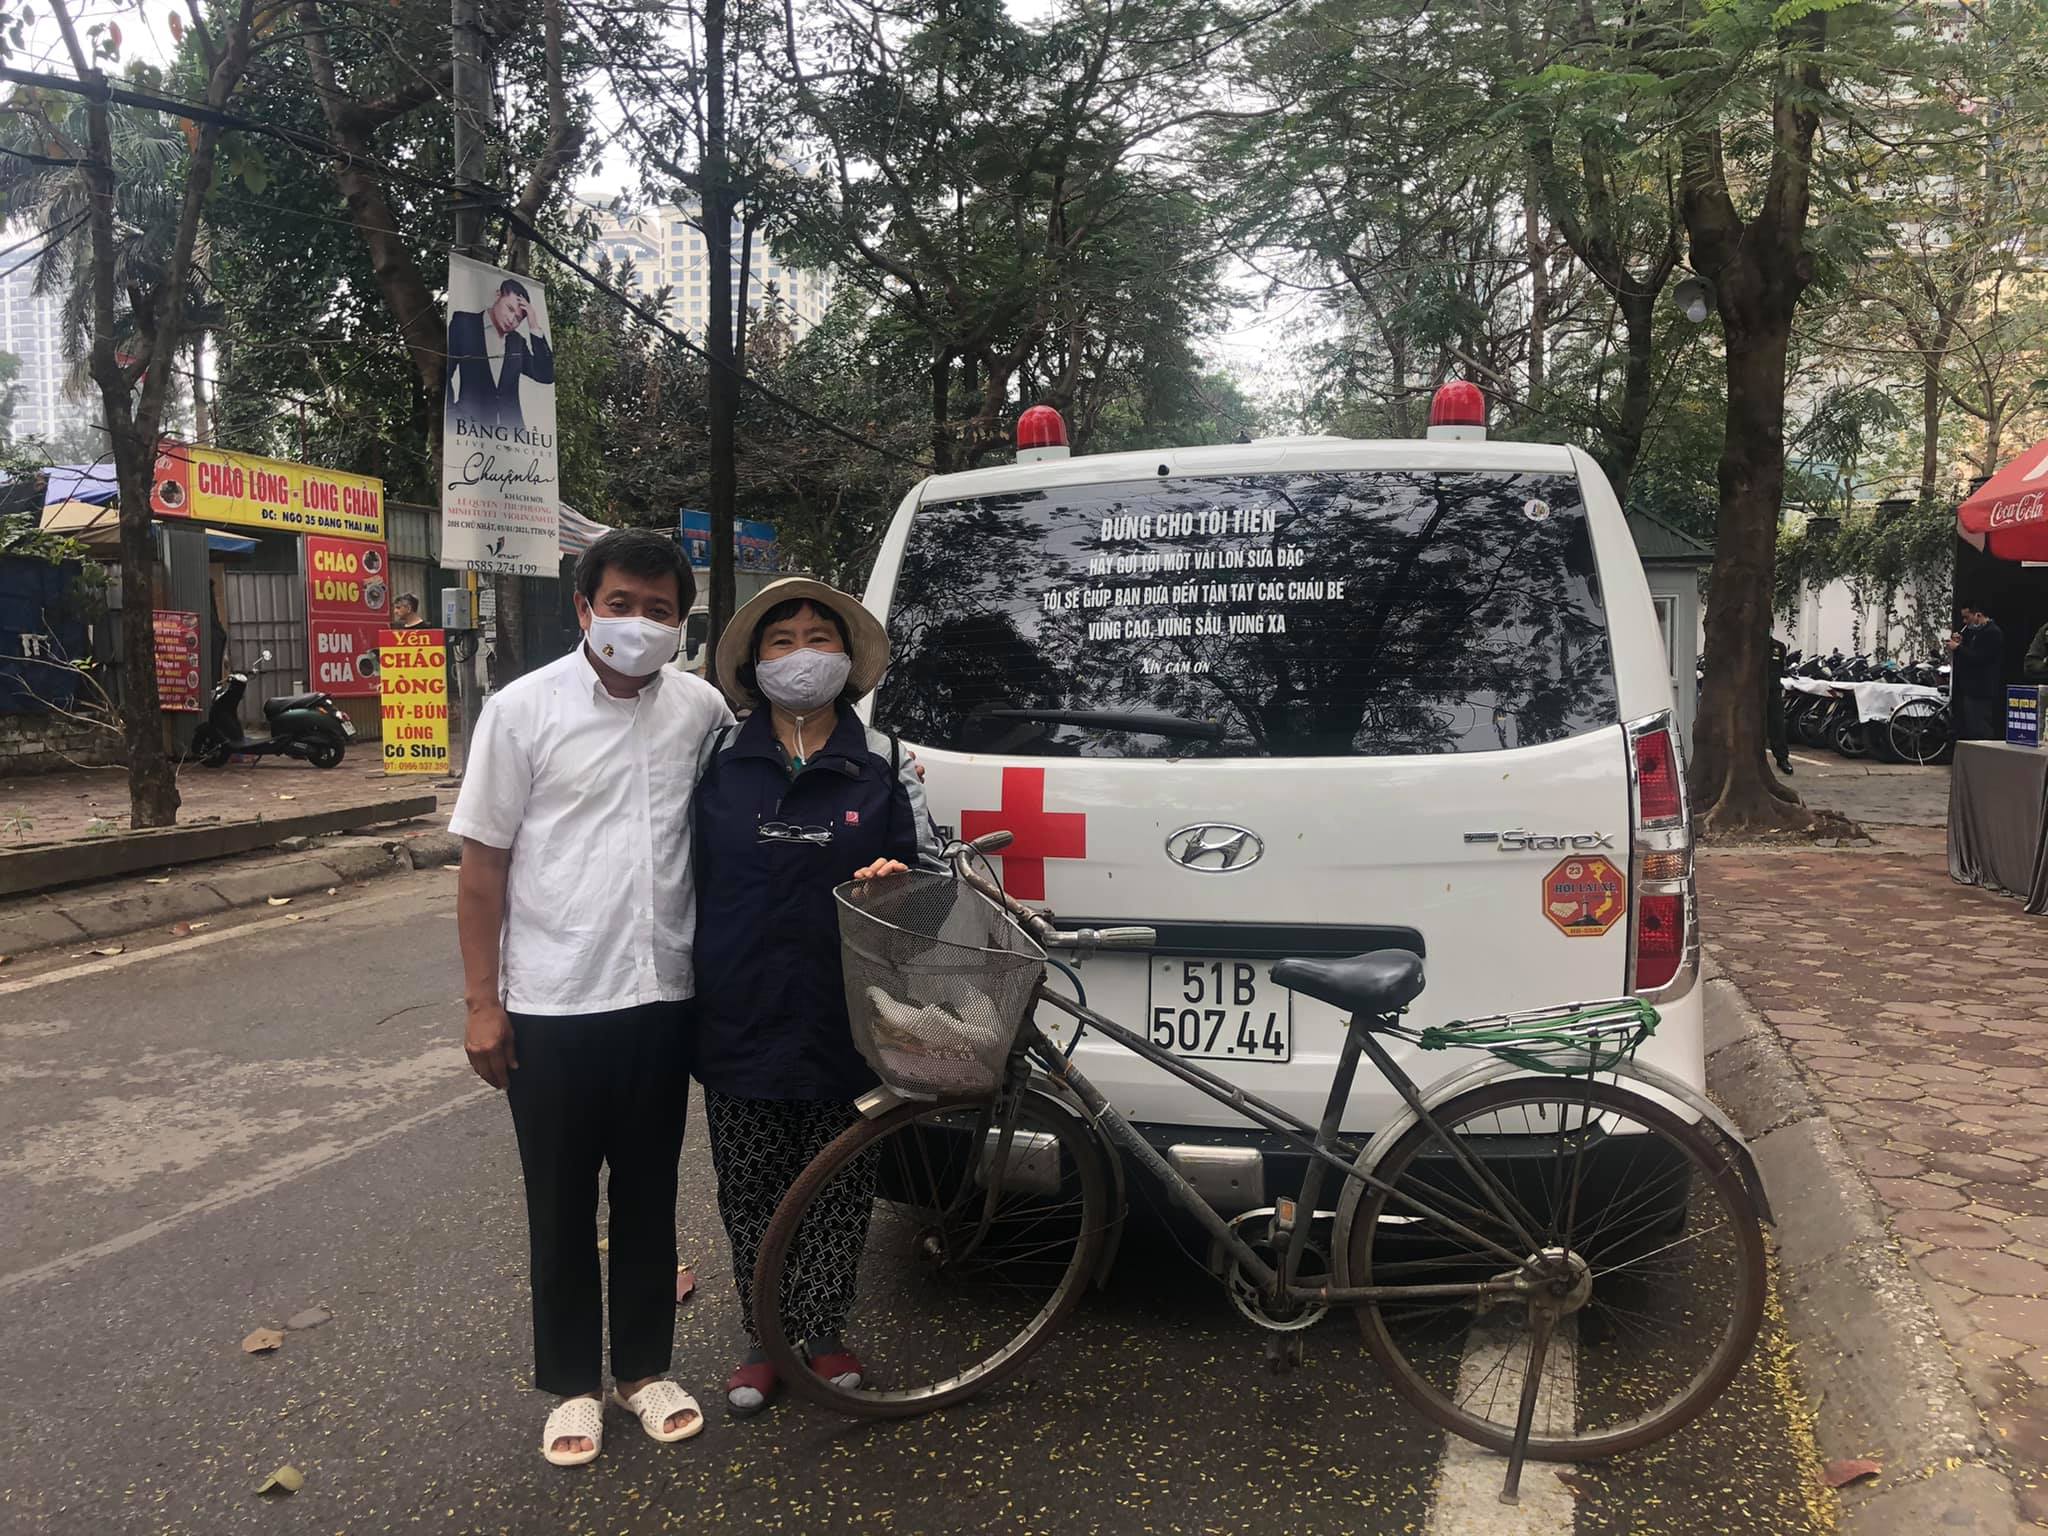 Ông Hải chụp hình cùng bà Nguyễn Thị Minh Phương (64 tuổi, tiến sĩ ngành khí tượng). Bà Phương đã đạp xe từ quận Hai Bà Trưng tới địa điểm quyên góp ở quận Tây Hồ để đóng góp vào quỹ từ thiện (ảnh từ Facebook ông Đoàn Ngọc Hải).